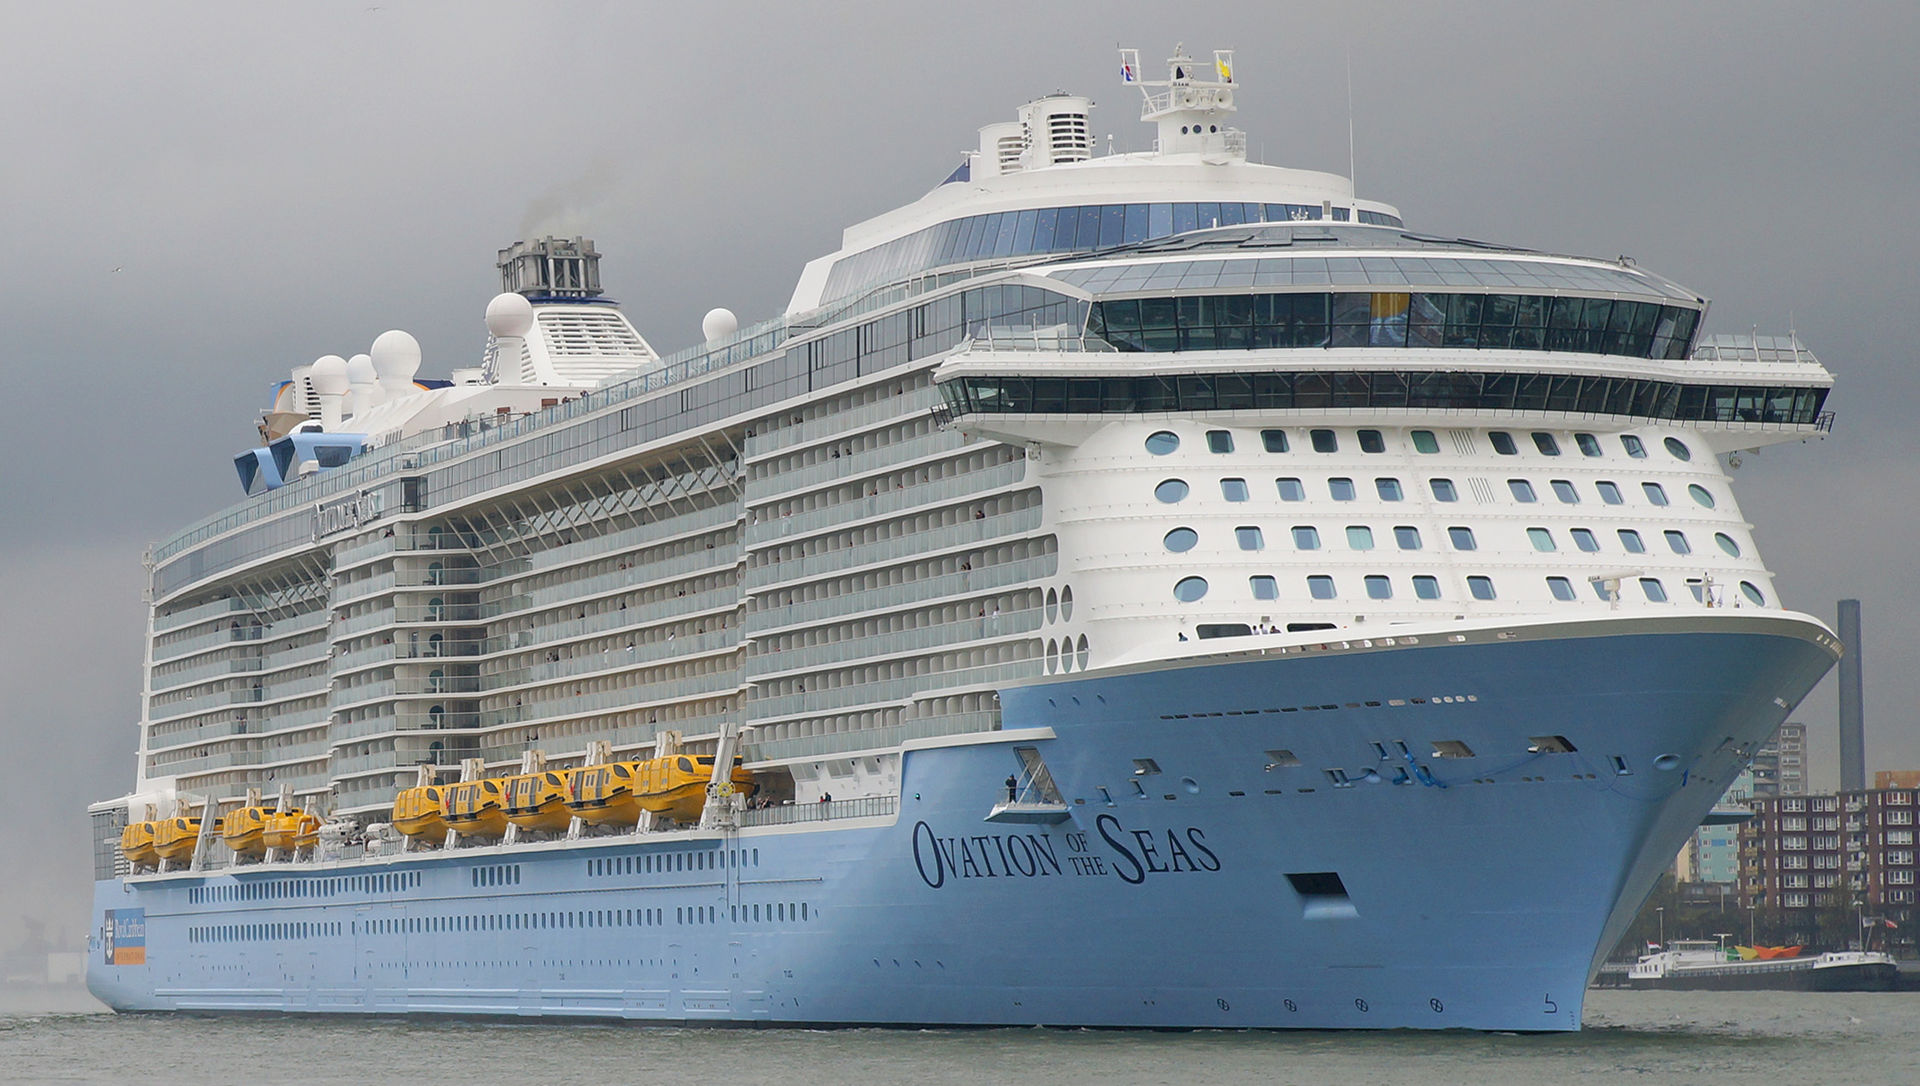 
Sau khi nhận Ovation of the Seas hồi tháng tư, Royal Caribbean Cruises đưa nó vượt qua hải trình kéo dài 52 ngày tới Thiên Tân, Trung Quốc. Bên cạnh thị trường du lịch phát triển nhanh, nhu cầu giải trí công nghệ cao lớn mạnh không ngừng ở thị trường châu Á là lý do để Royal Caribbean Cruises đưa siêu tàu du lịch thông minh nhất thế giới tới khu vực.
